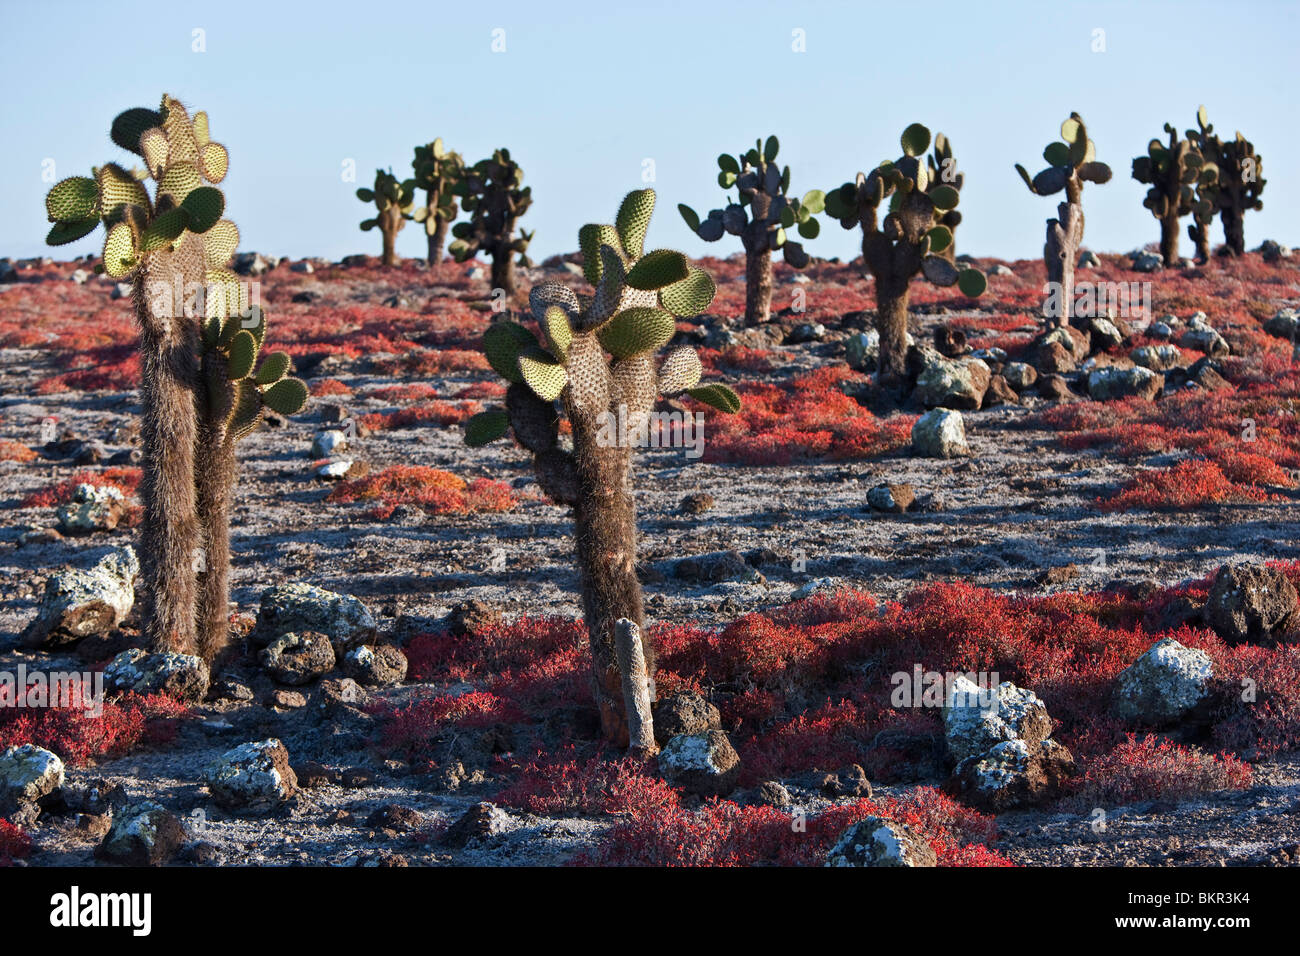 Îles Galápagos, d'énormes arbres cactus rouge et le coucal poussent sur l'île du sud de la toundra autrement Plaza. Banque D'Images